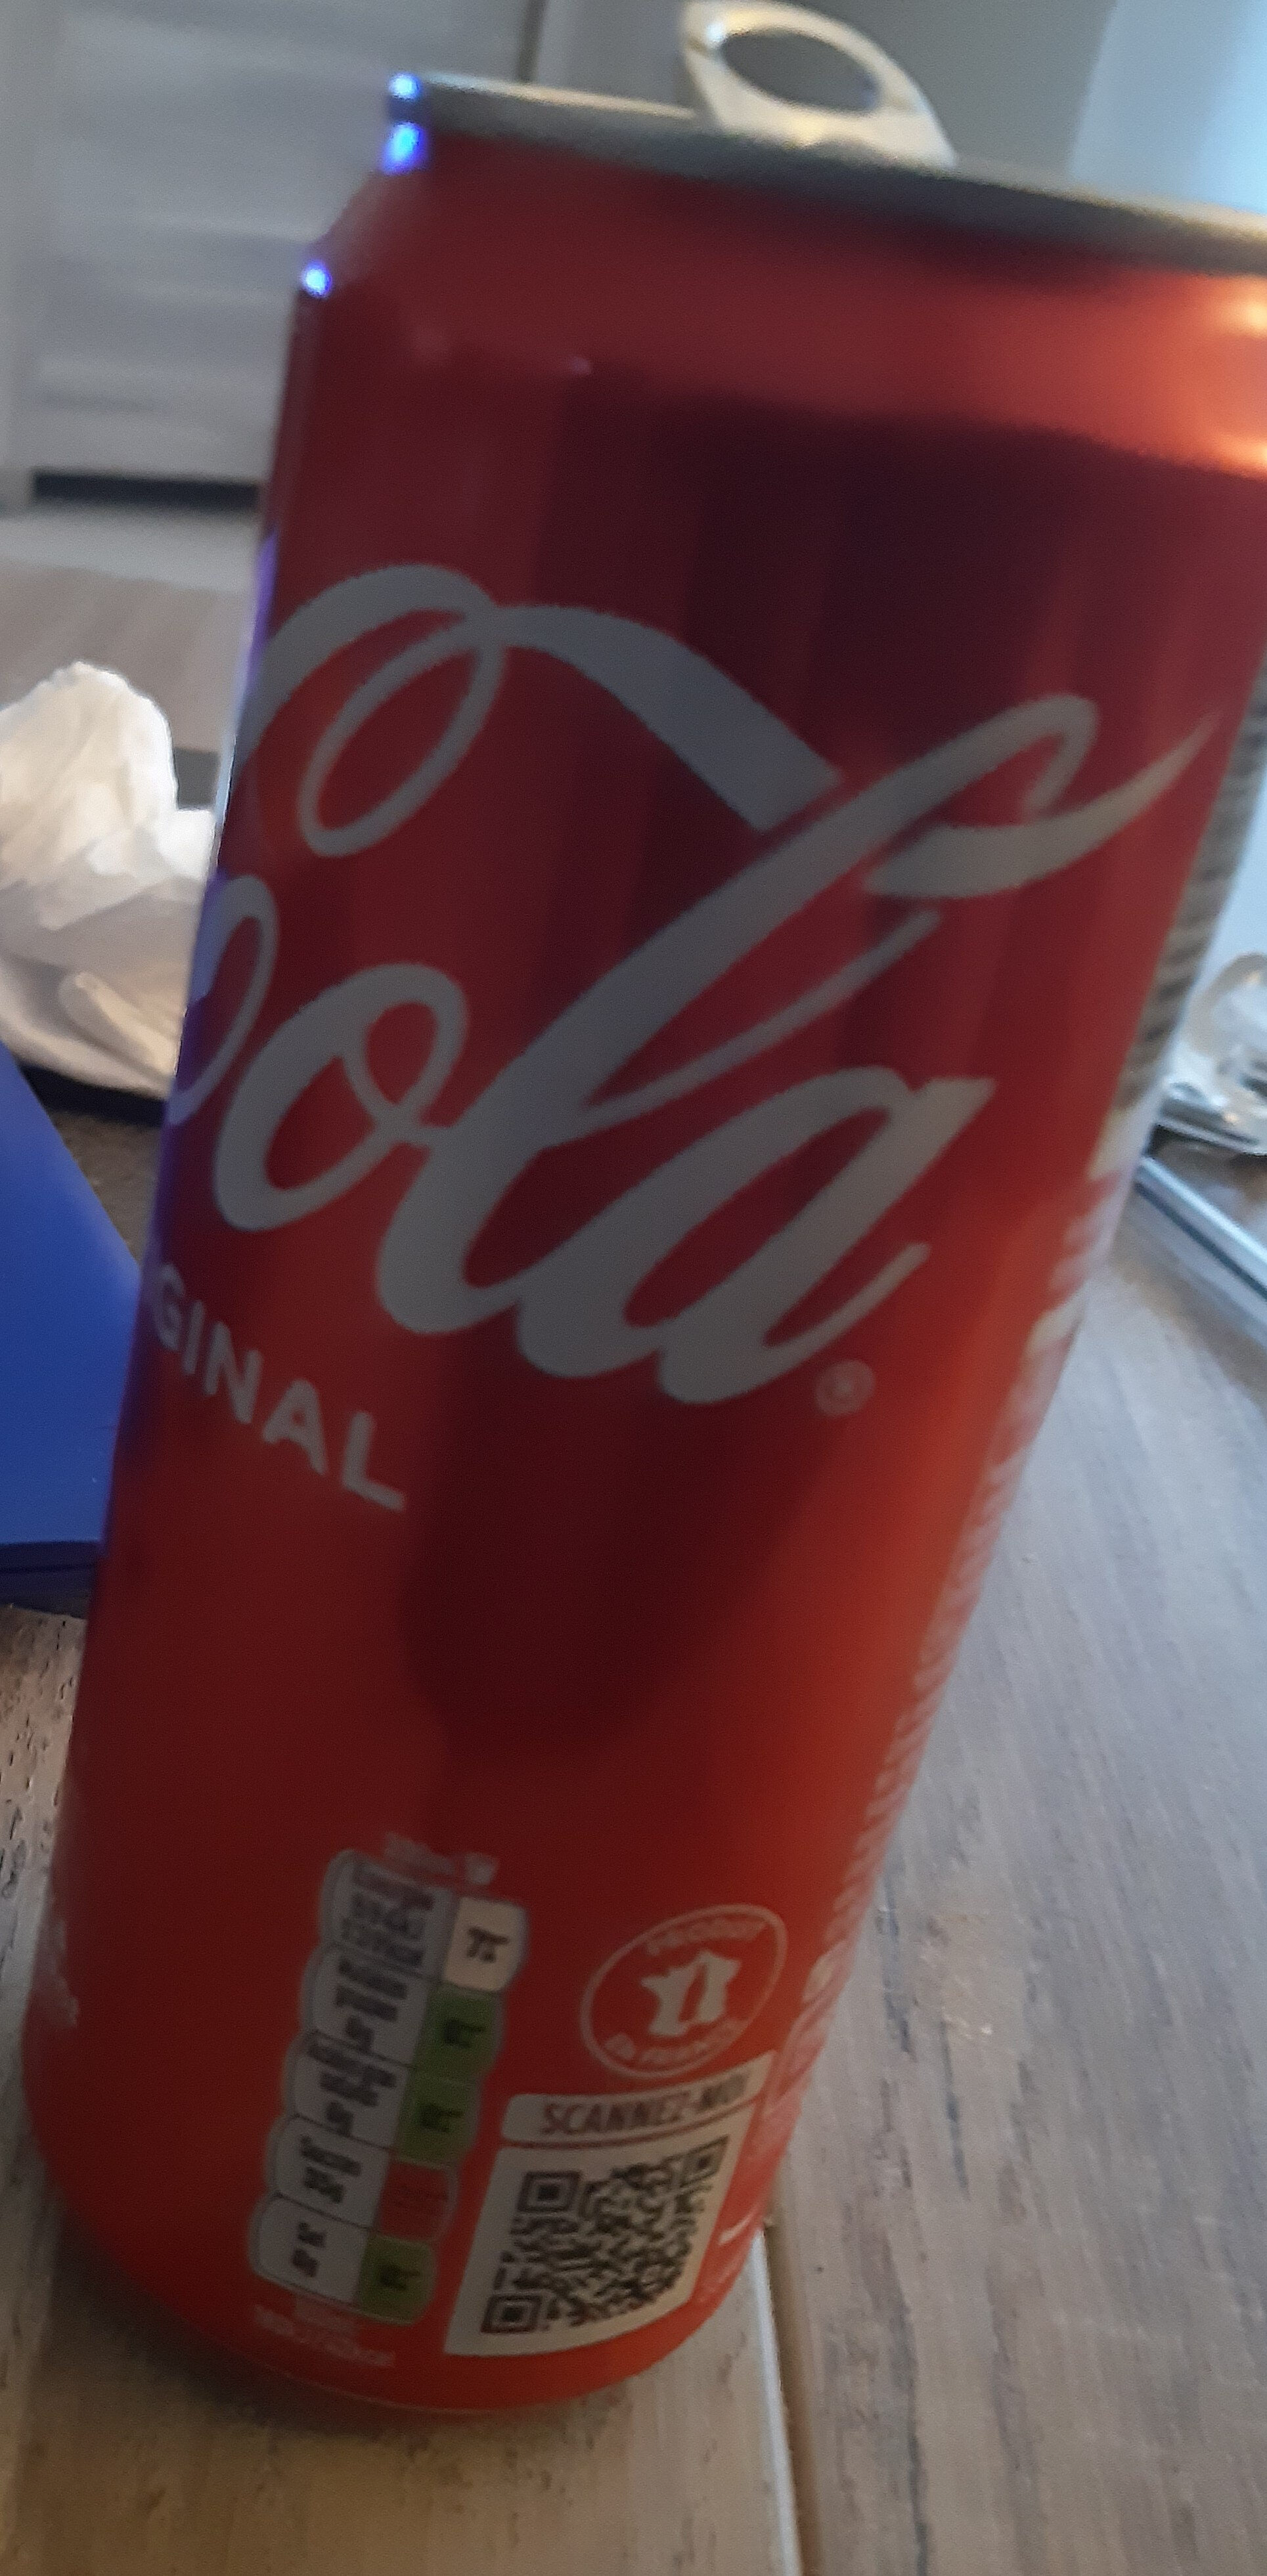 Coca-Cola goût original - Product - fr